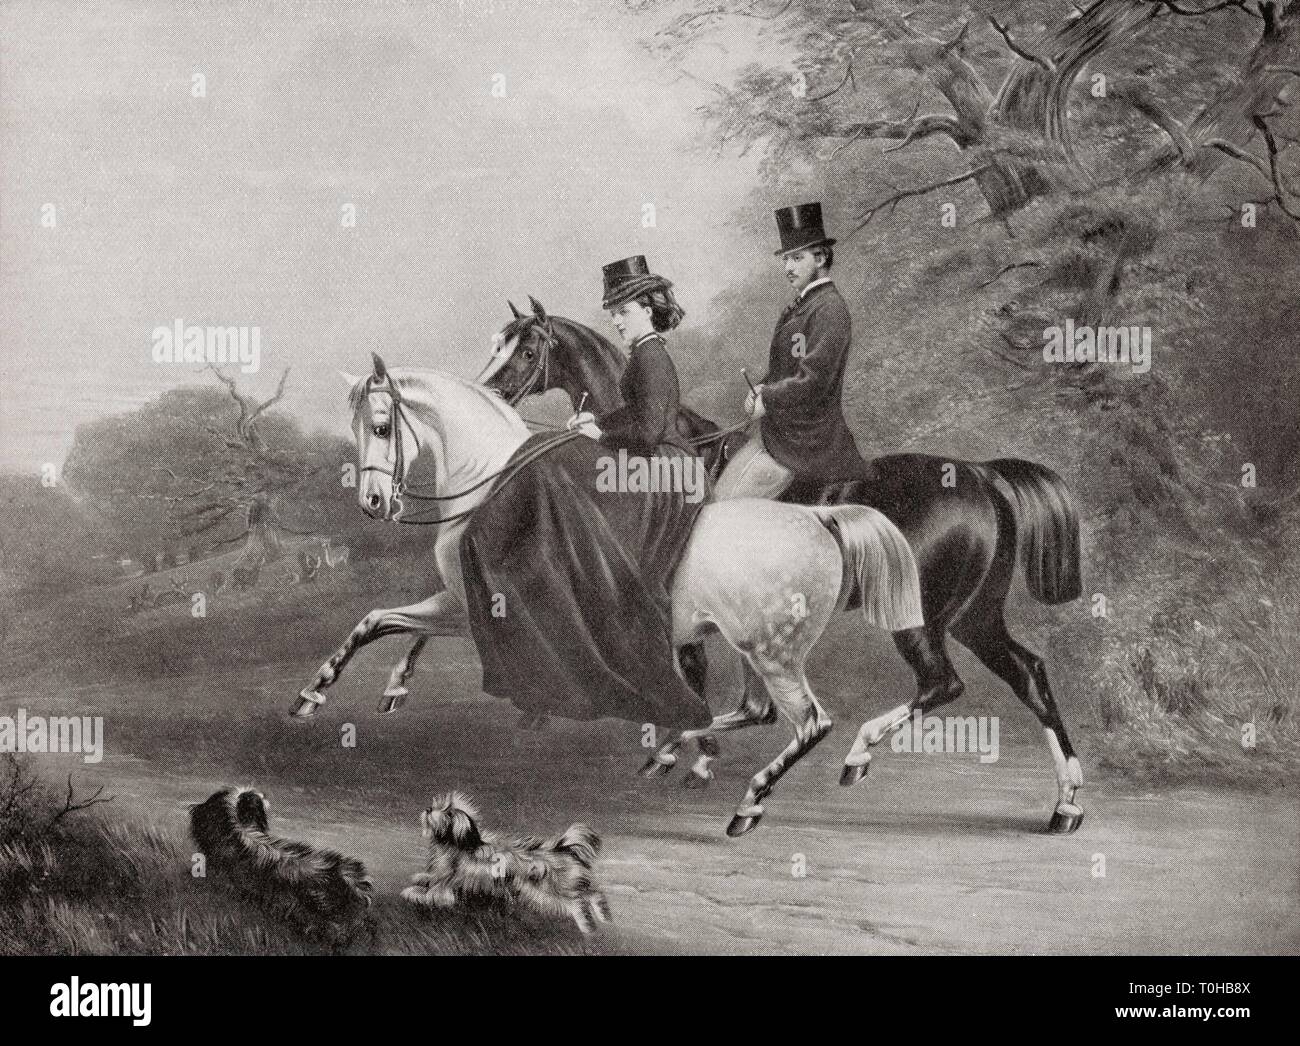 Albert Edward e Alexandra di Danimarca a cavallo, Inghilterra, Regno Unito, Regno Unito, vecchio dipinto d'epoca del 1800 Foto Stock